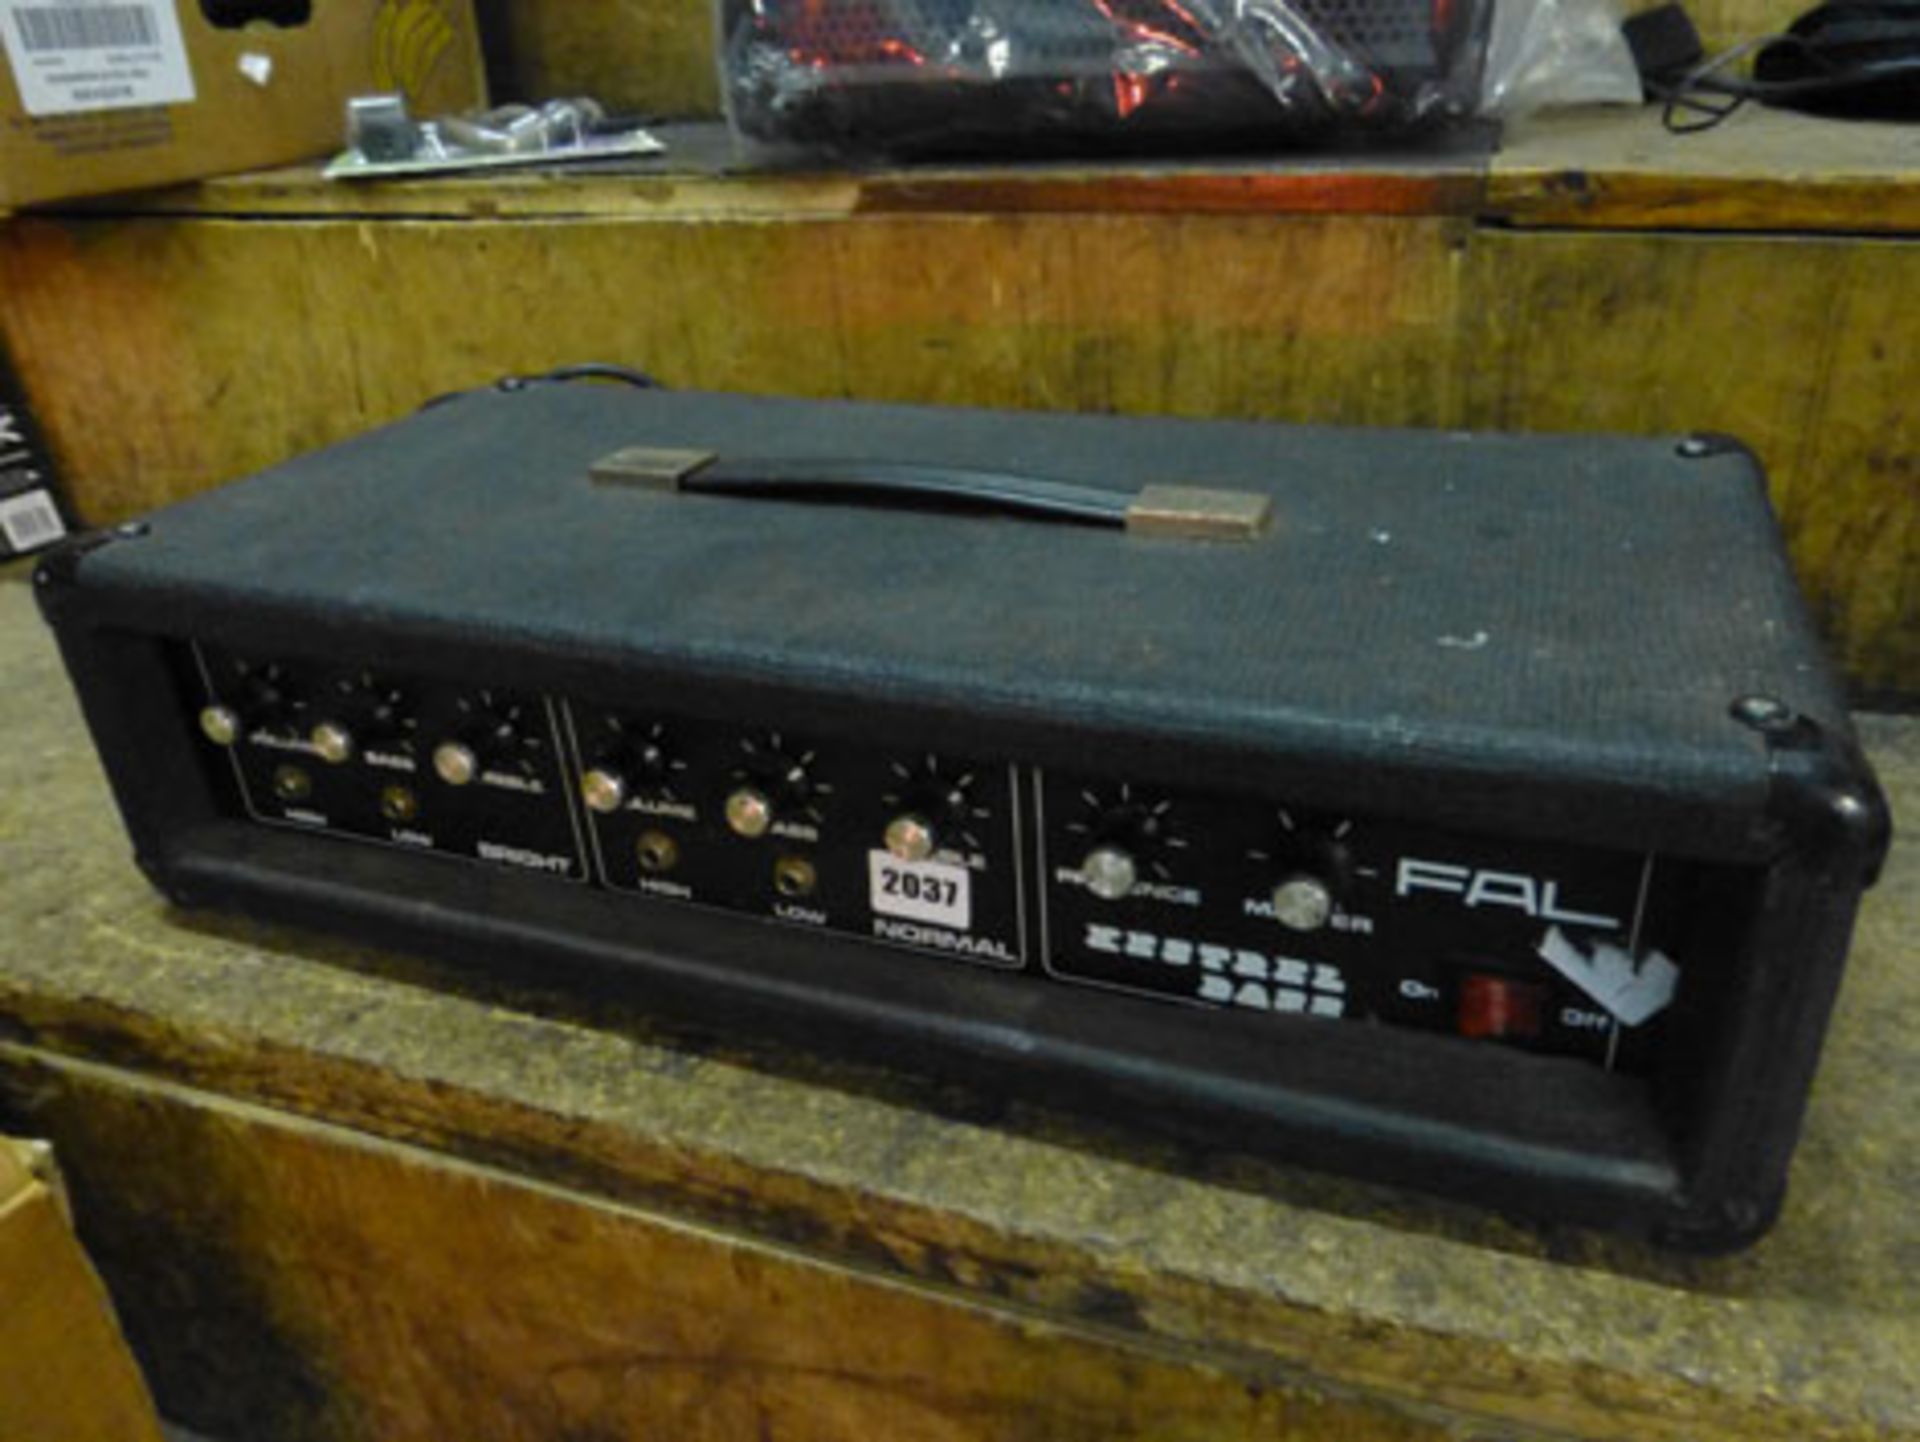 Kestrel bass Fal amplifier